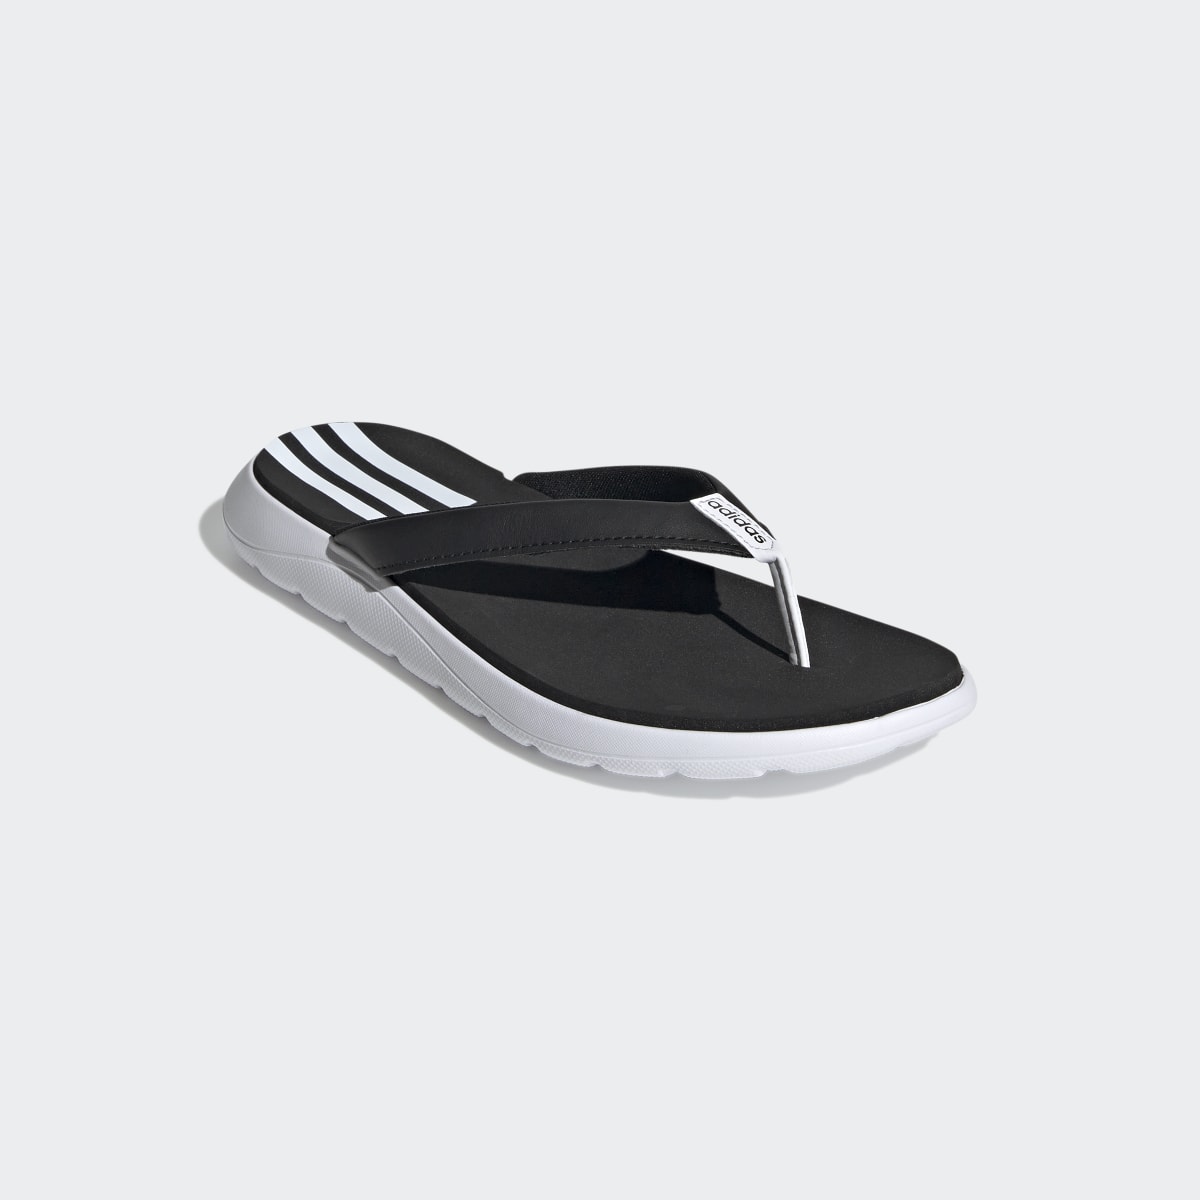 Adidas Comfort Flip-Flops. 5